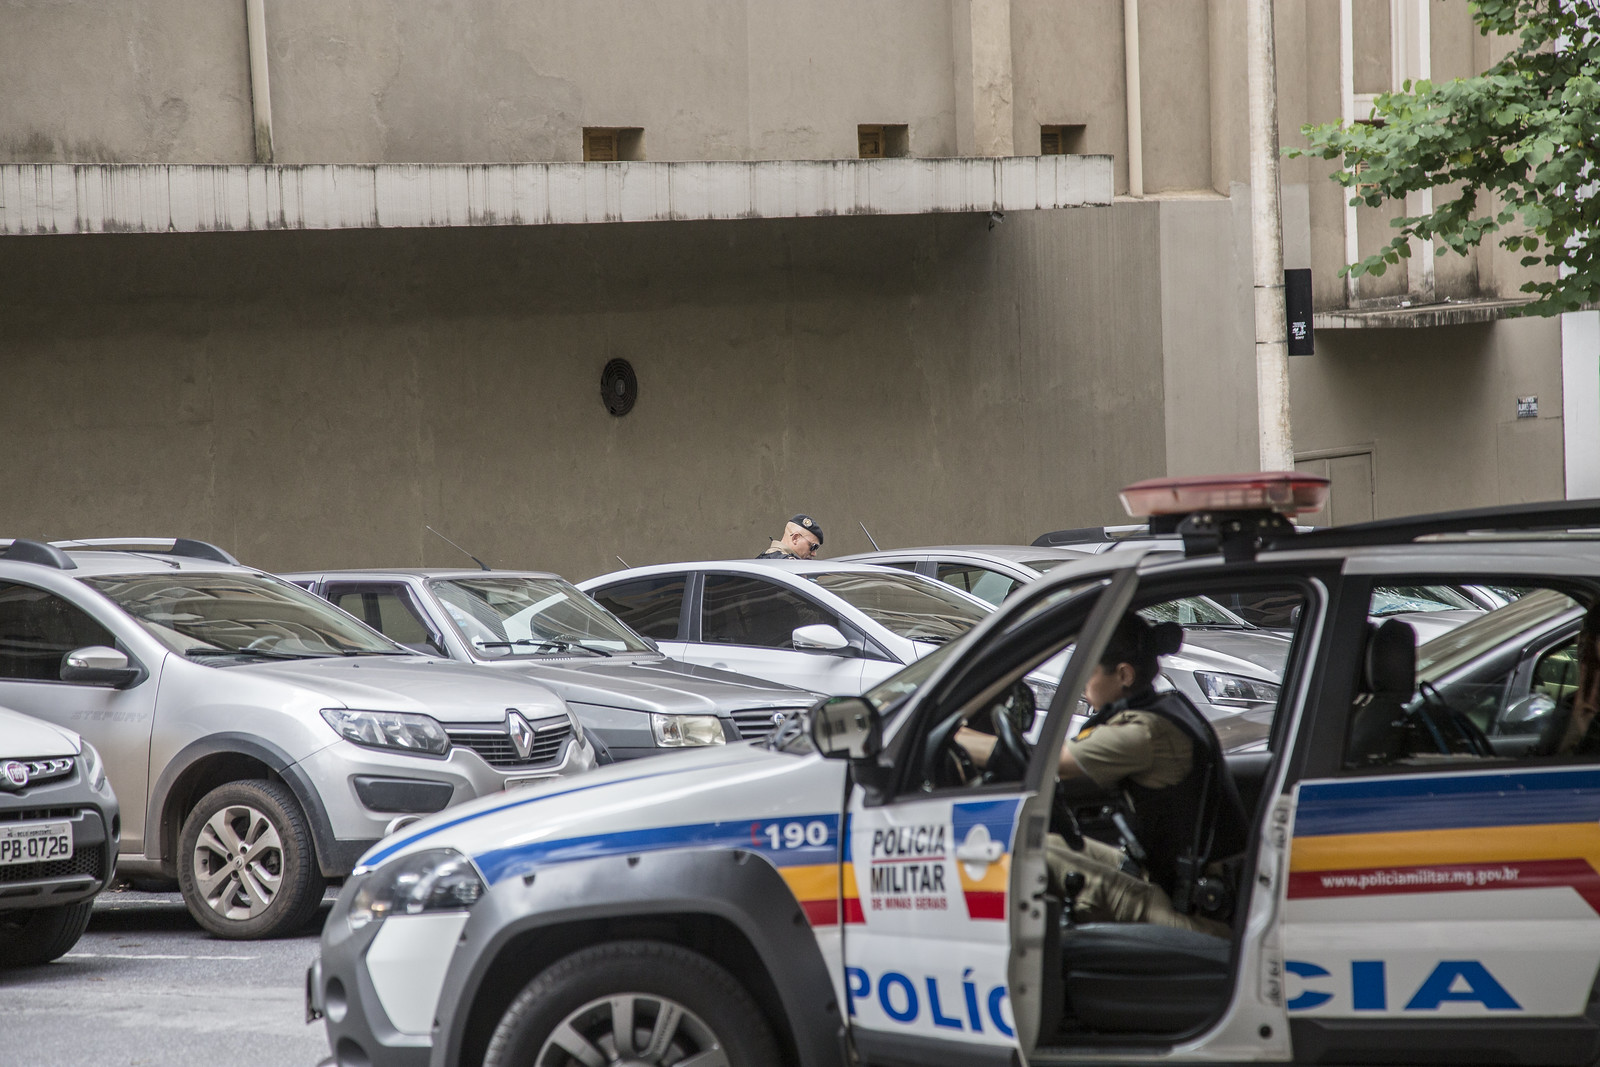 Carros estacionados e uma viatura da Polícia Militar de Minas Gerais